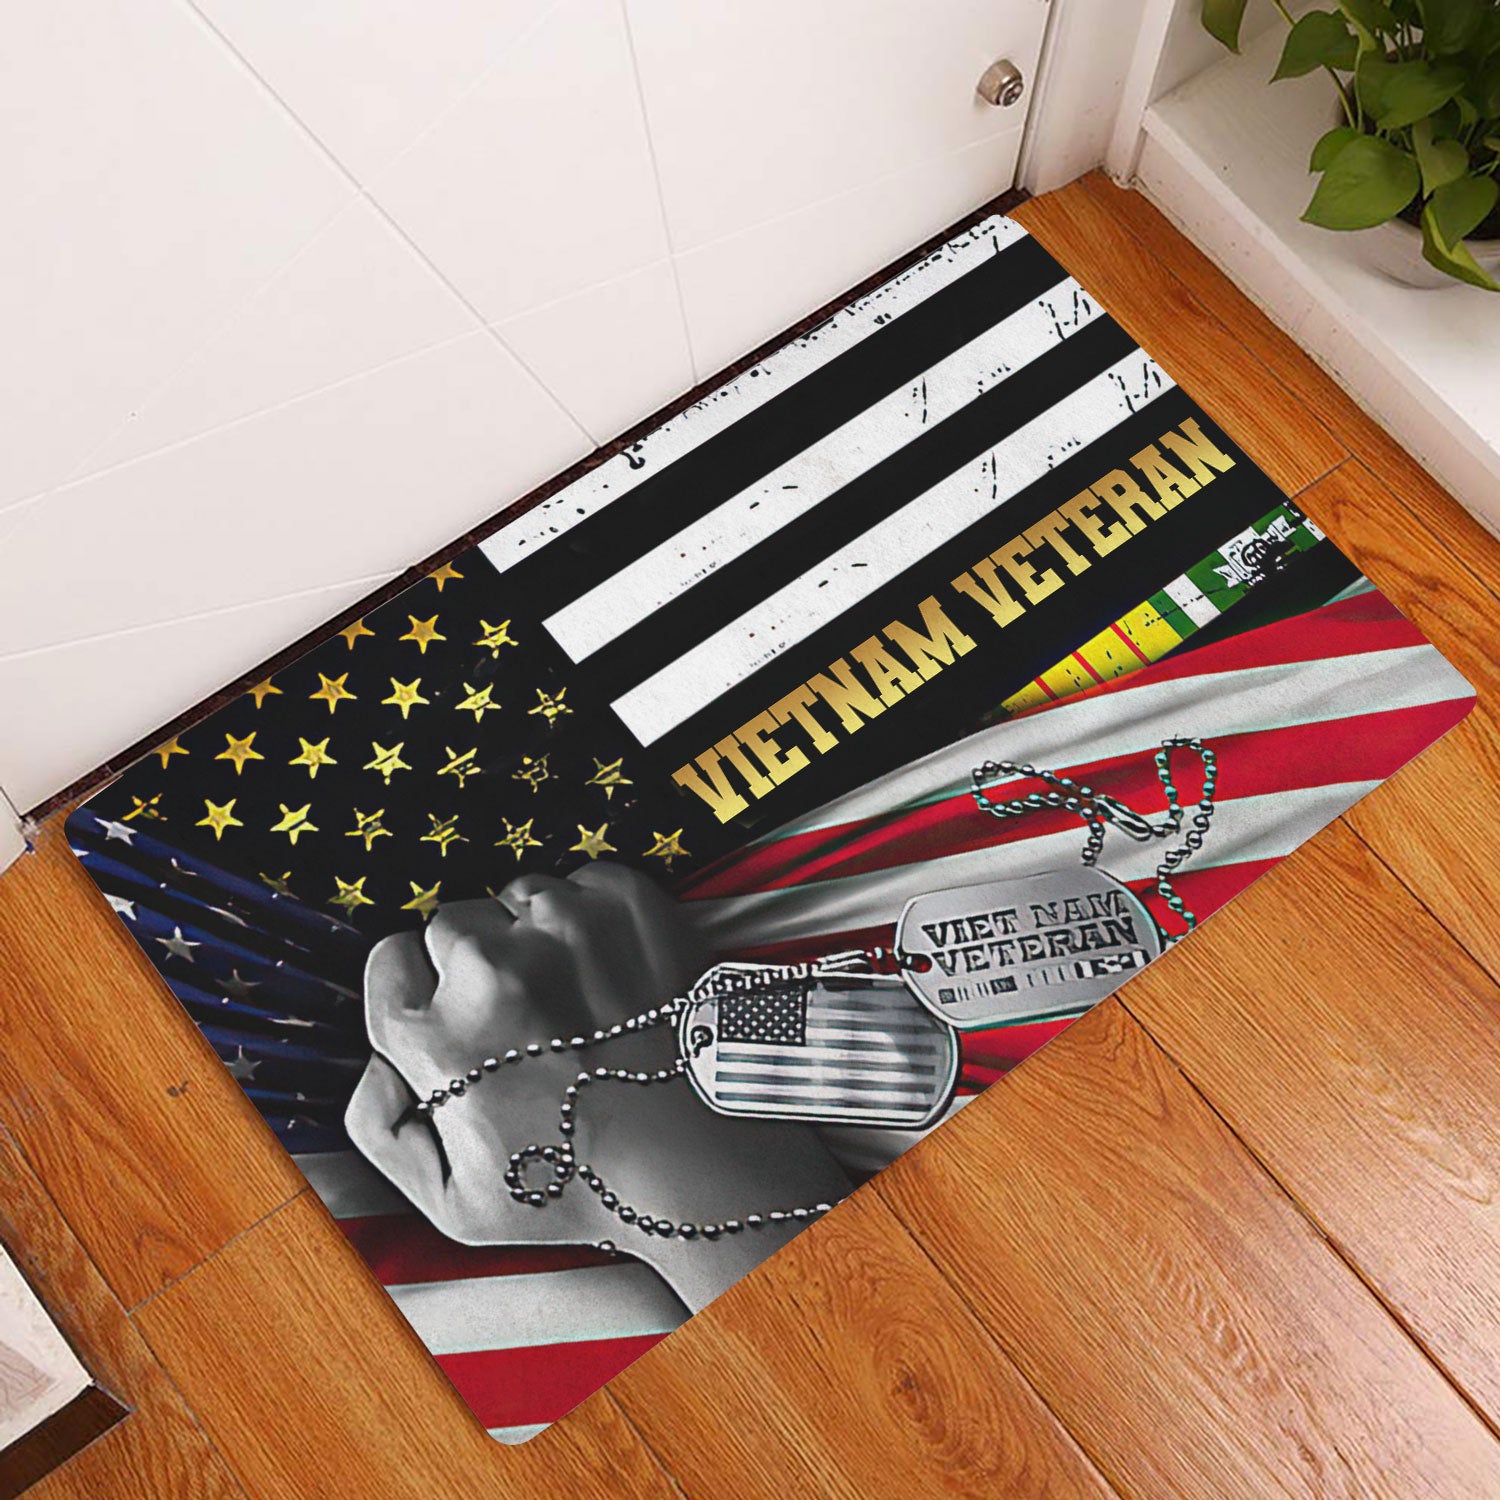 Ohaprints-Doormat-Outdoor-Indoor-Vietnam-Veteran-Proud-Veteran-Amrican-Flag-Rubber-Door-Mat-1542-